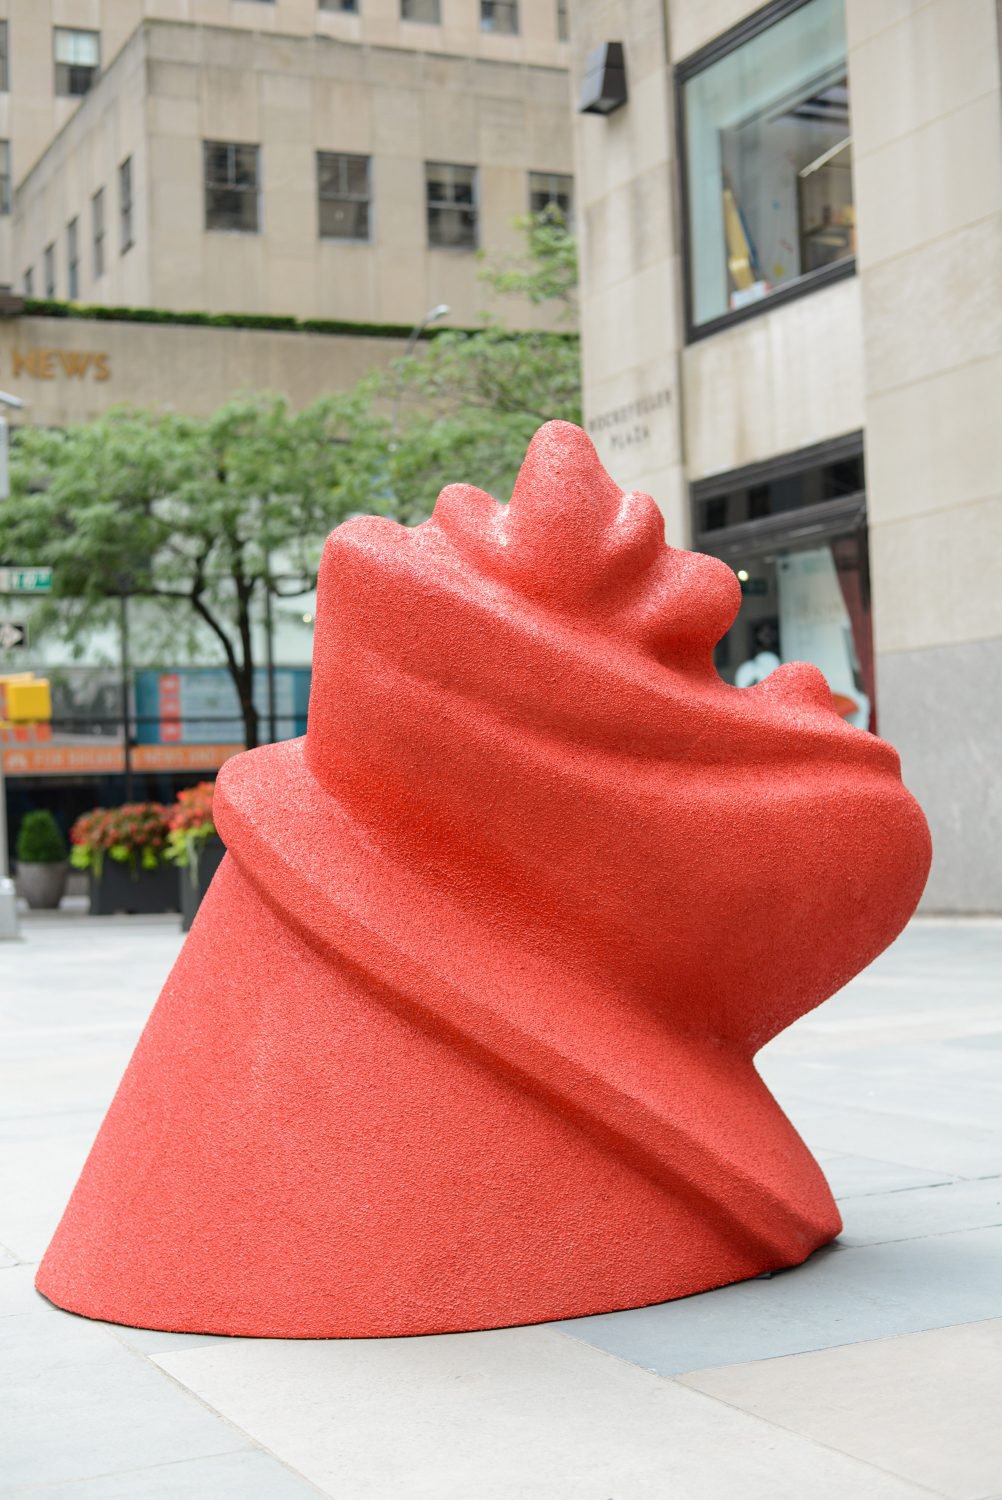 Lena HenkeFrieze Sculpture, 2020Installation viewRockefeller Center, New York